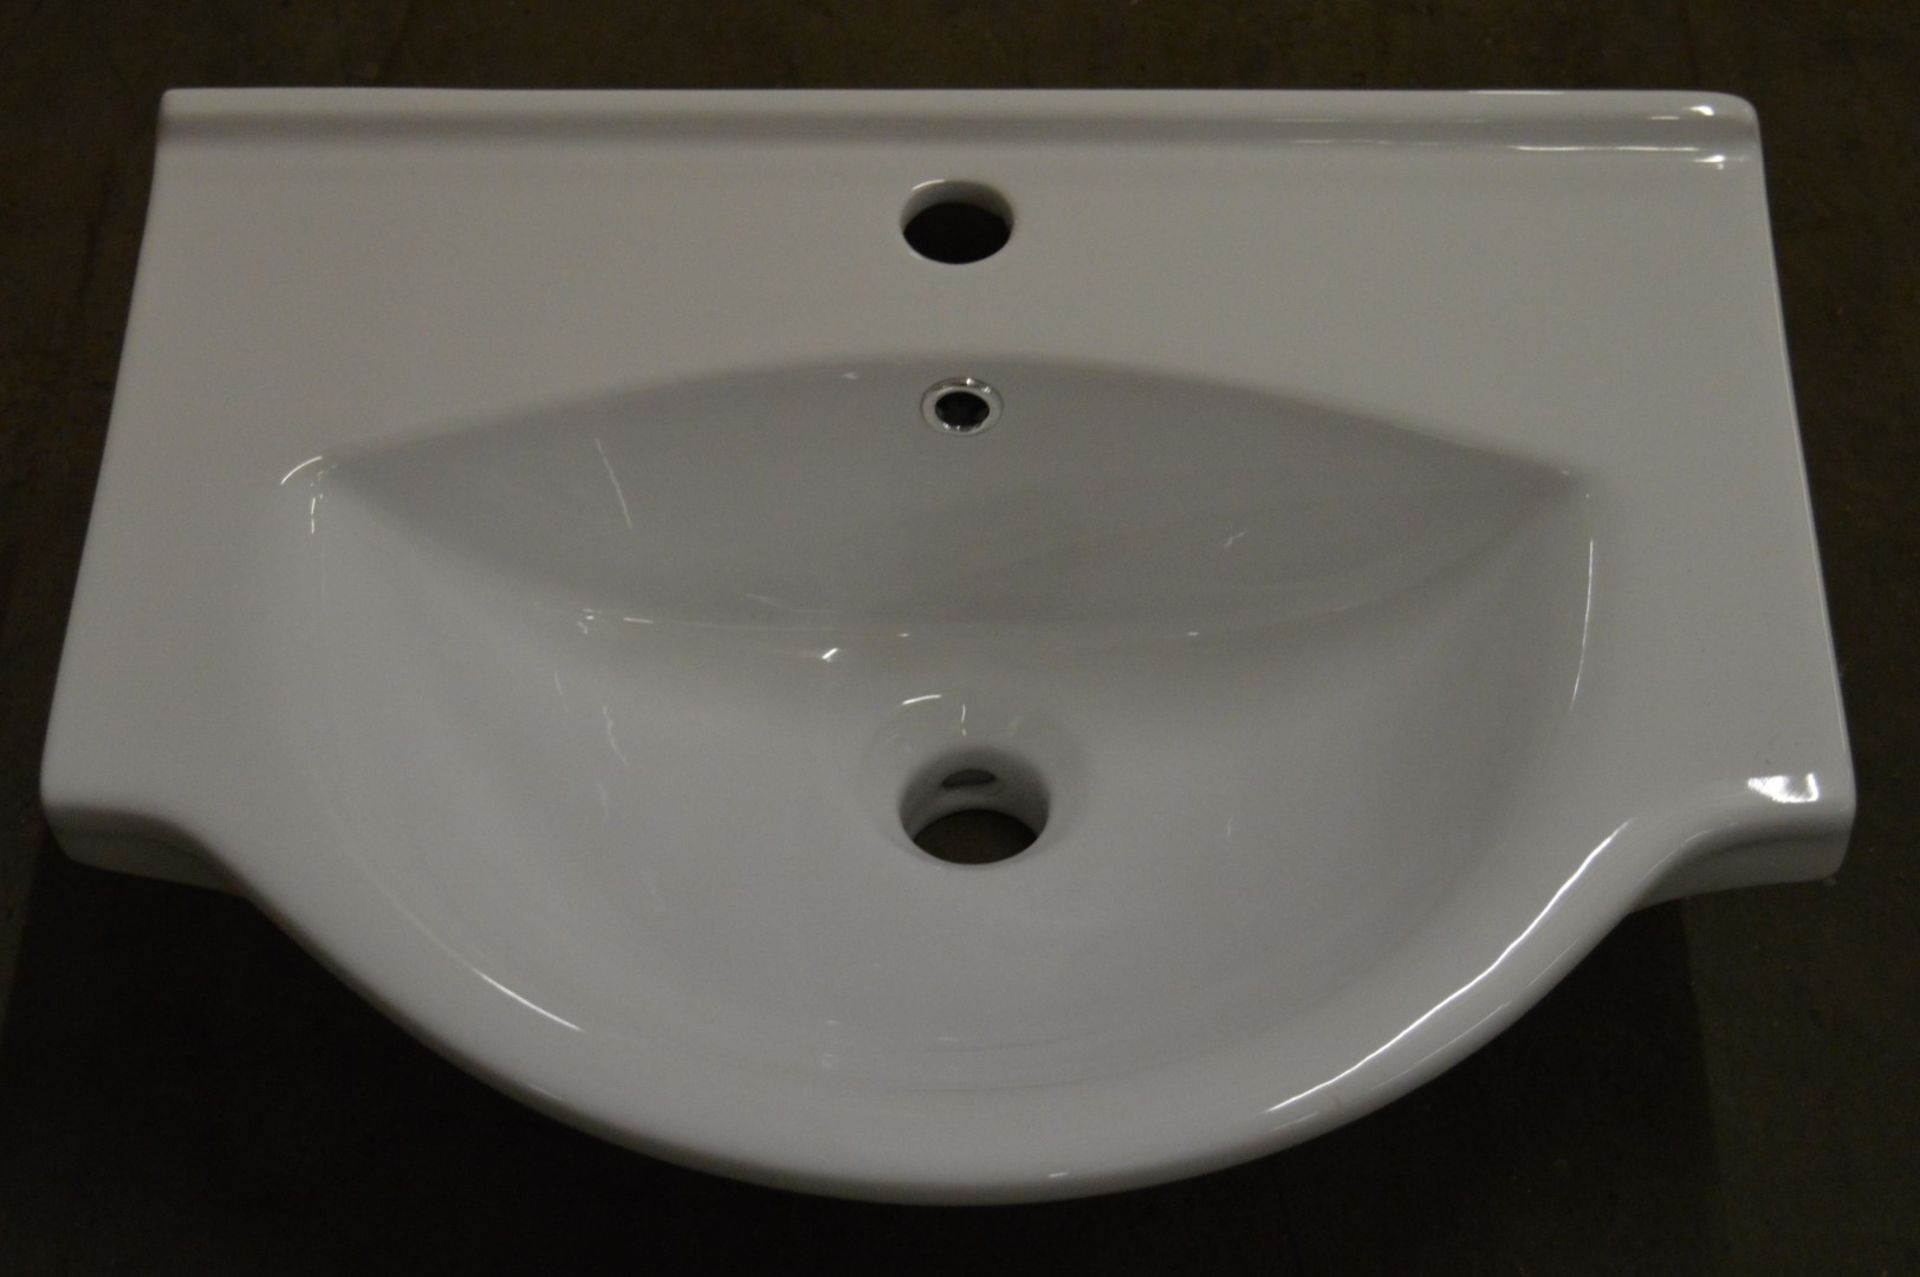 10 x Vogue Bathrooms LUNA Semi Recessed Bathroom Sink Basins - High Quality Ceramic Sink Basin -